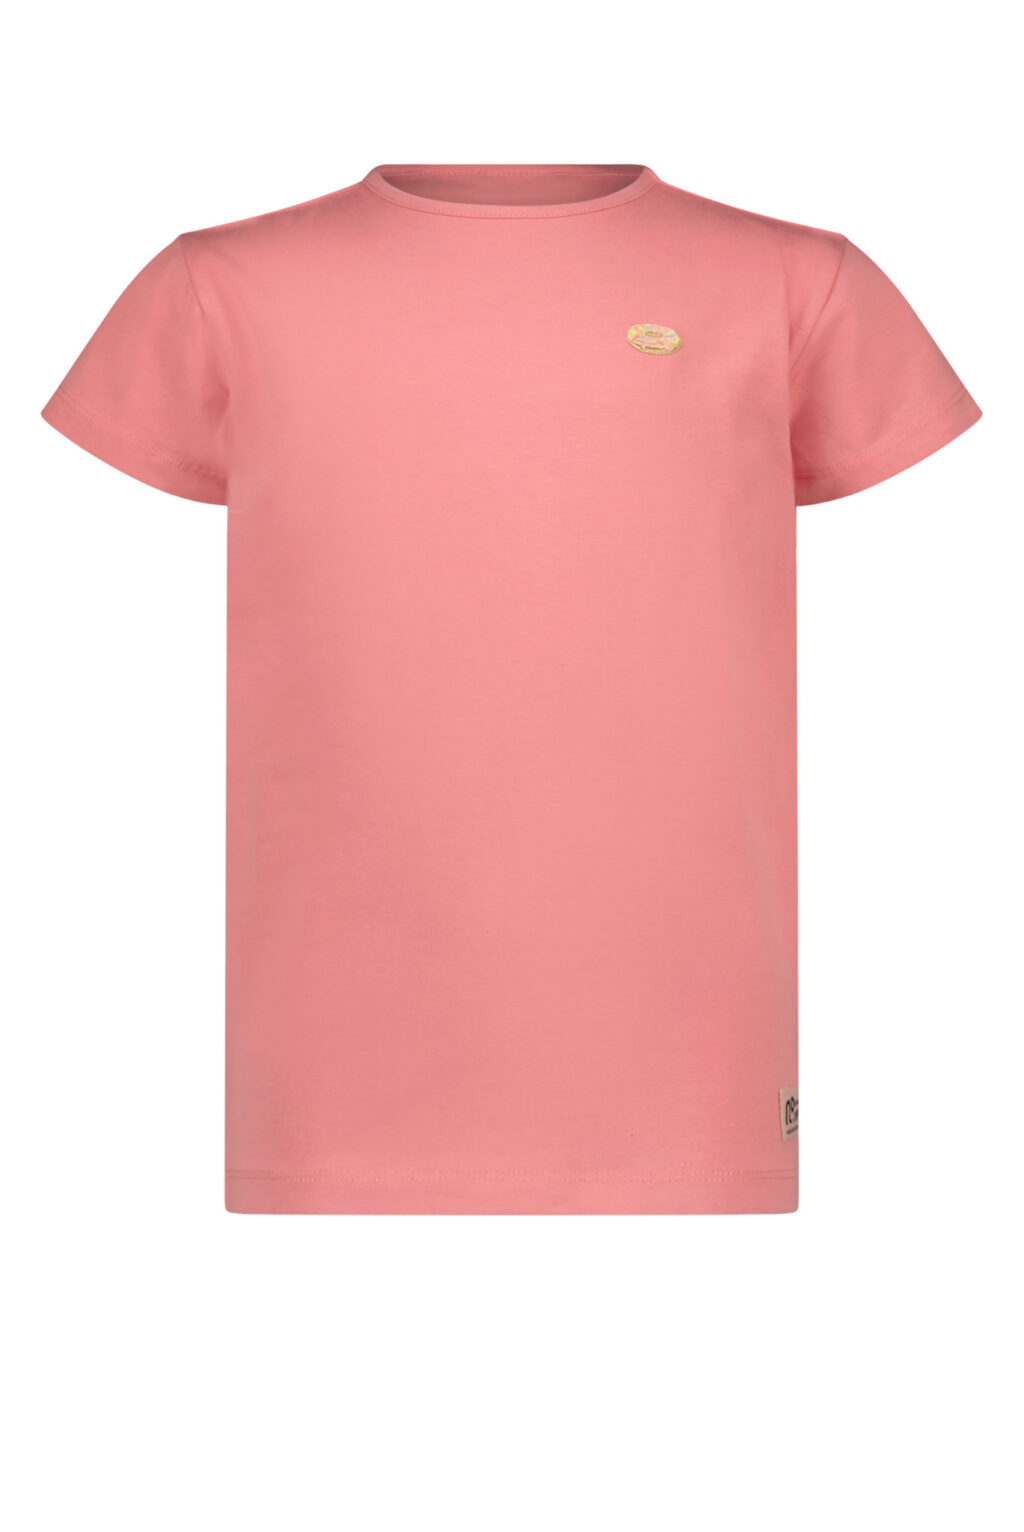 NoNo Meisjes t-shirt - Basic - Perzik blossom ~ Spinze.nl